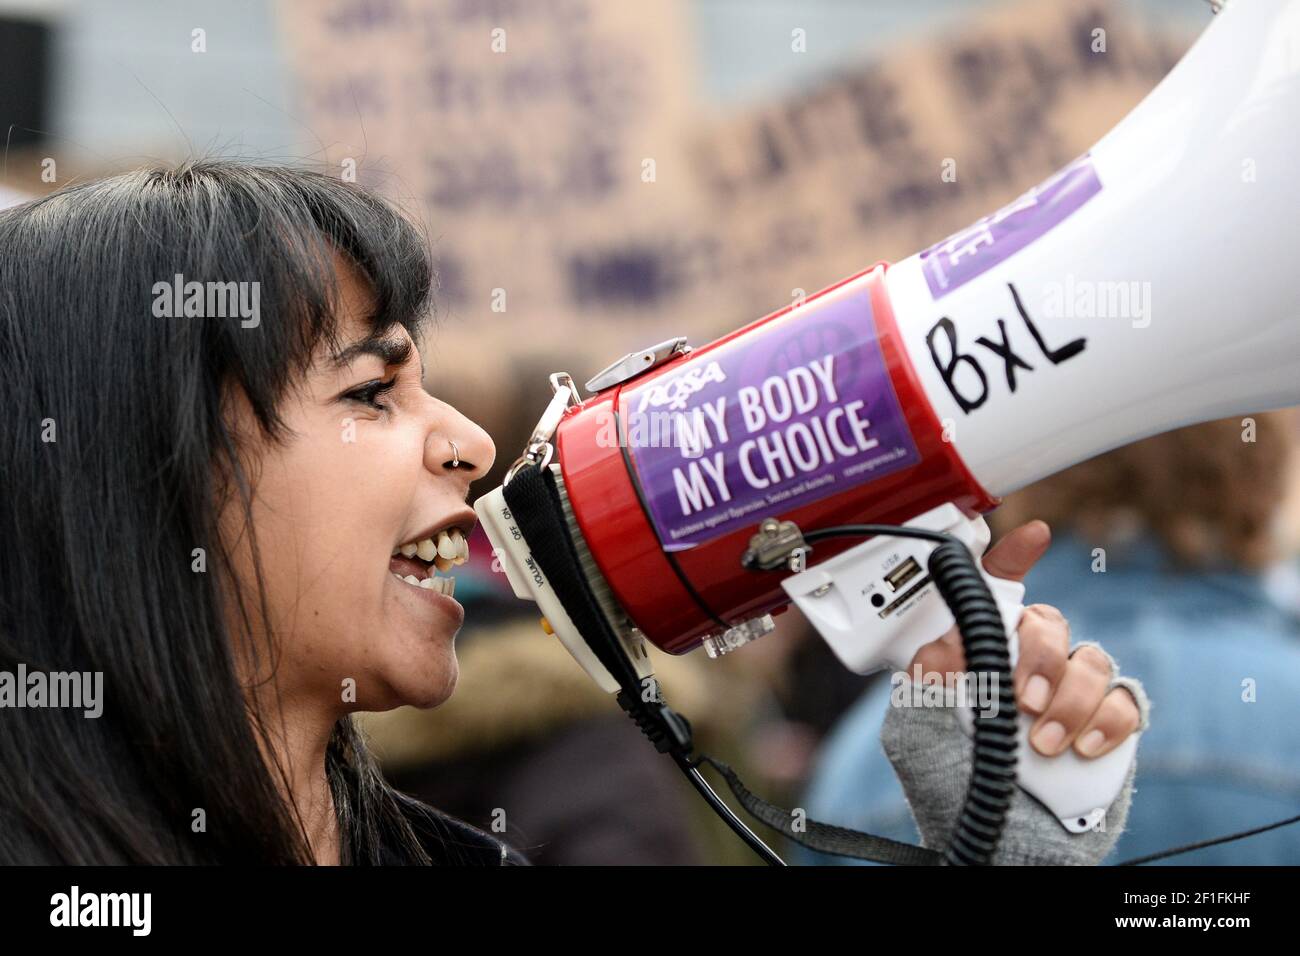 Una mujer utiliza un megáfono durante una manifestación para conmemorar el día Internacional de la Mujer en Bruselas, Bélgica, el 8 de marzo de 2021. La pegatina dice "Mi cuerpo, Mi elección". REUTERS/Johanna Geron Foto de stock